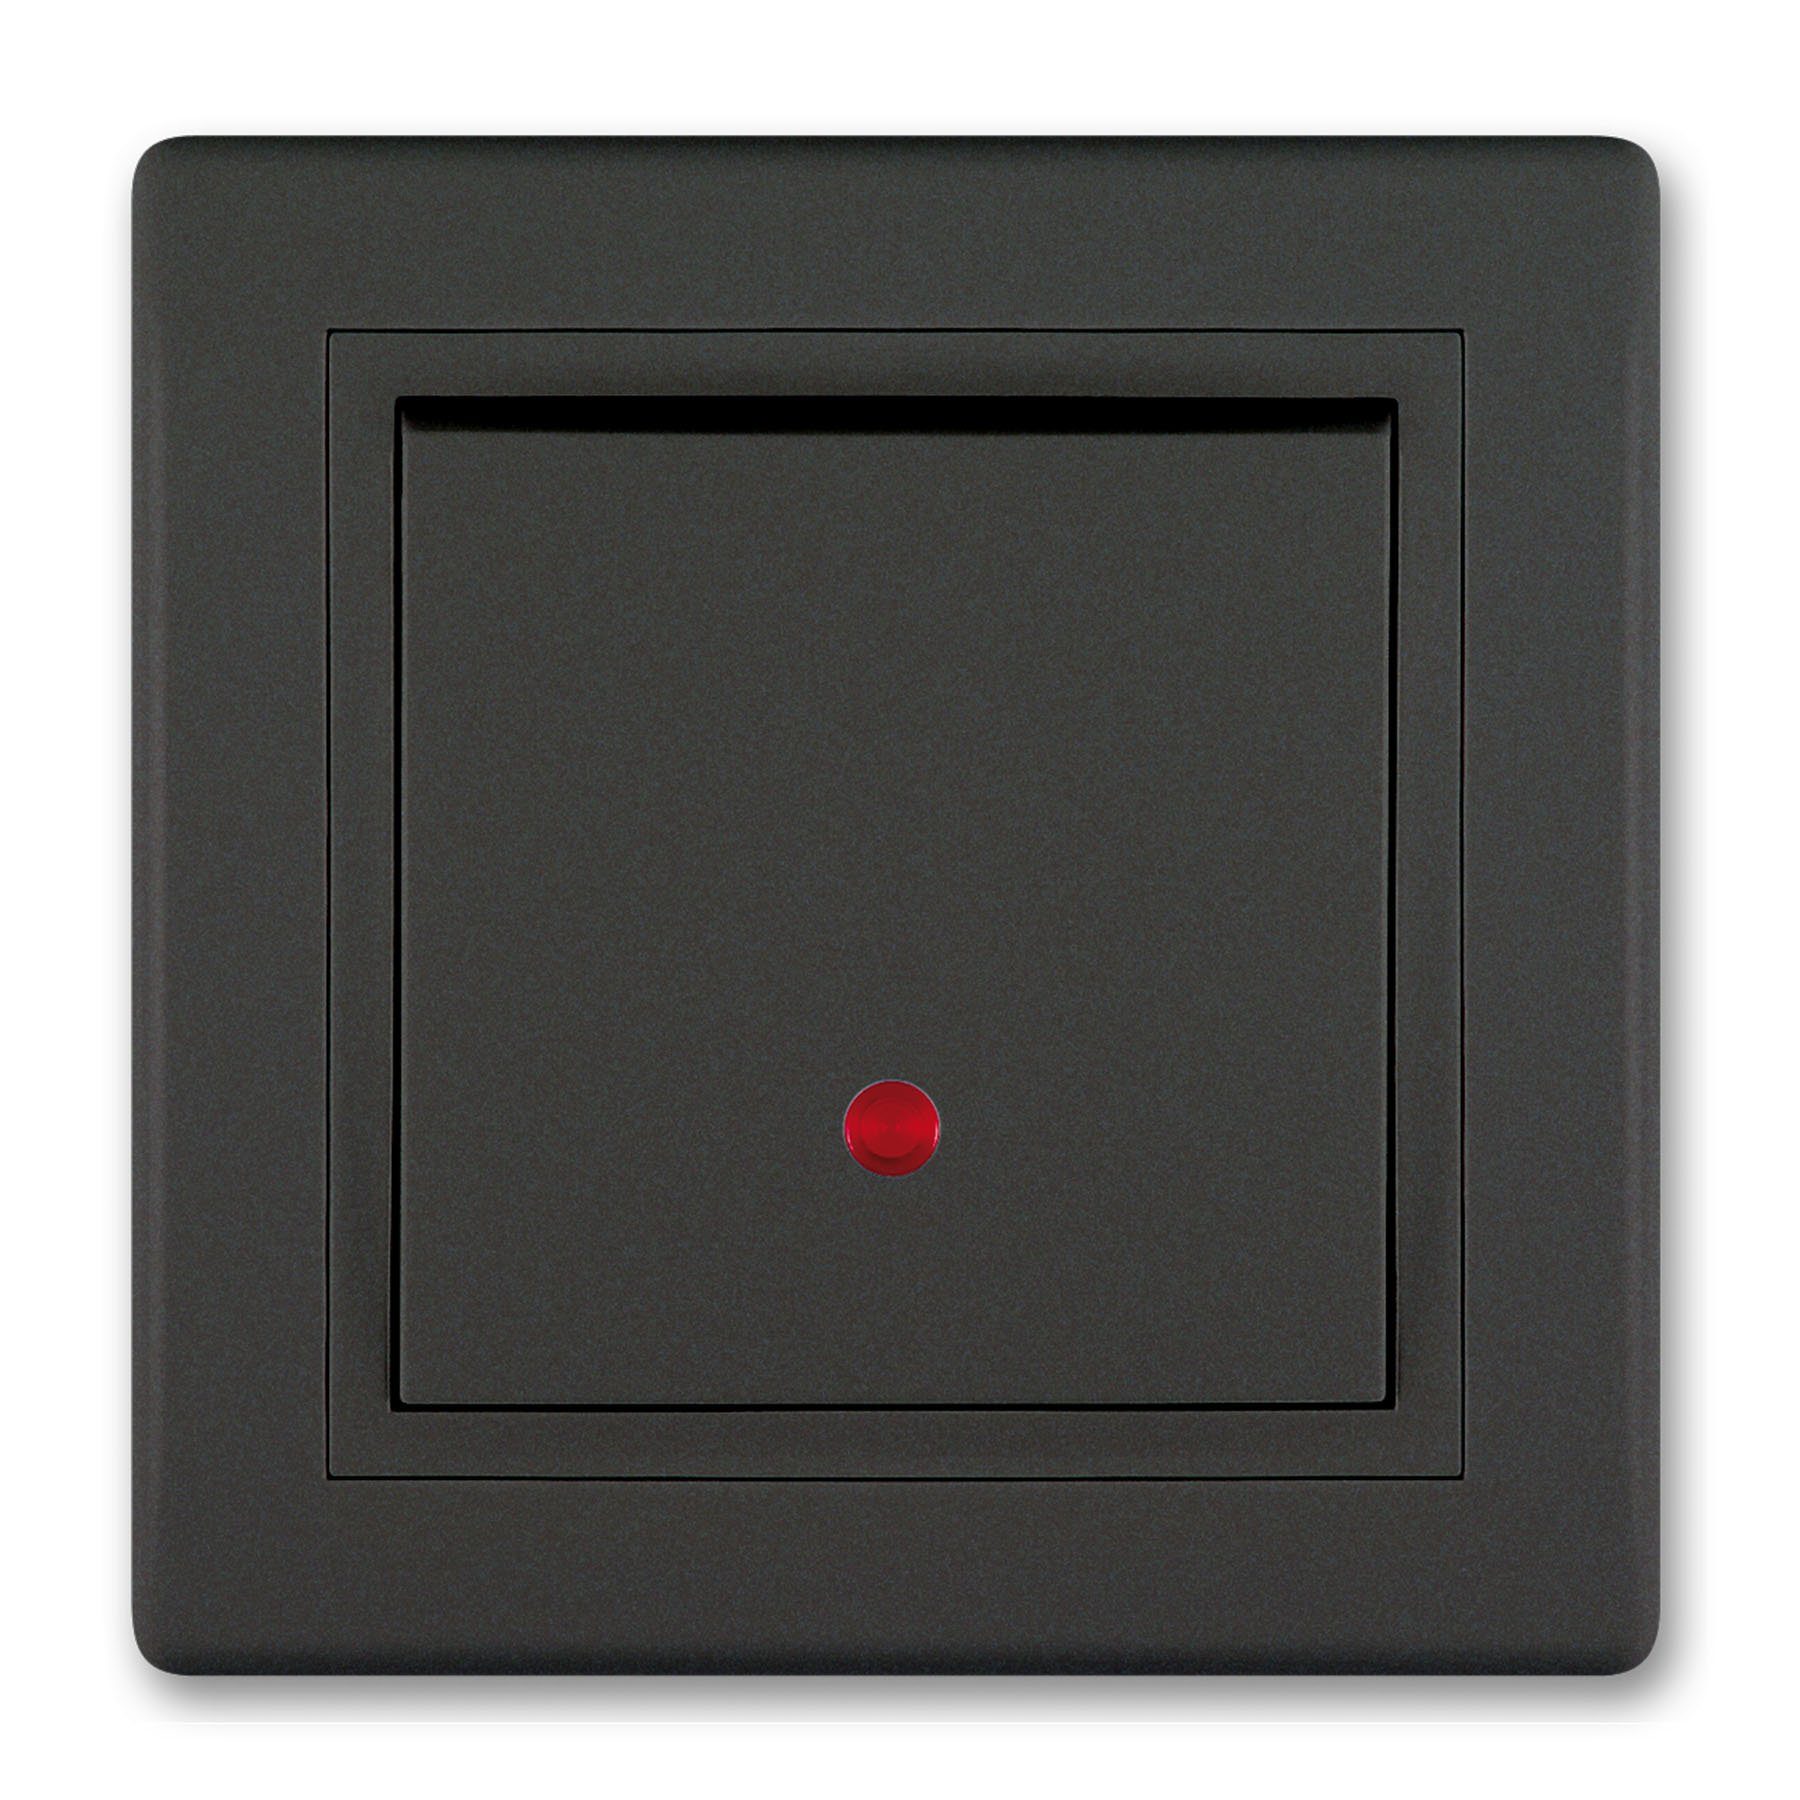 Aling Conel Lichtschalter Prestige Line Schalter mit Glimmlampe Schwarz Soft Touch (Packung), VDE-zertifiziert